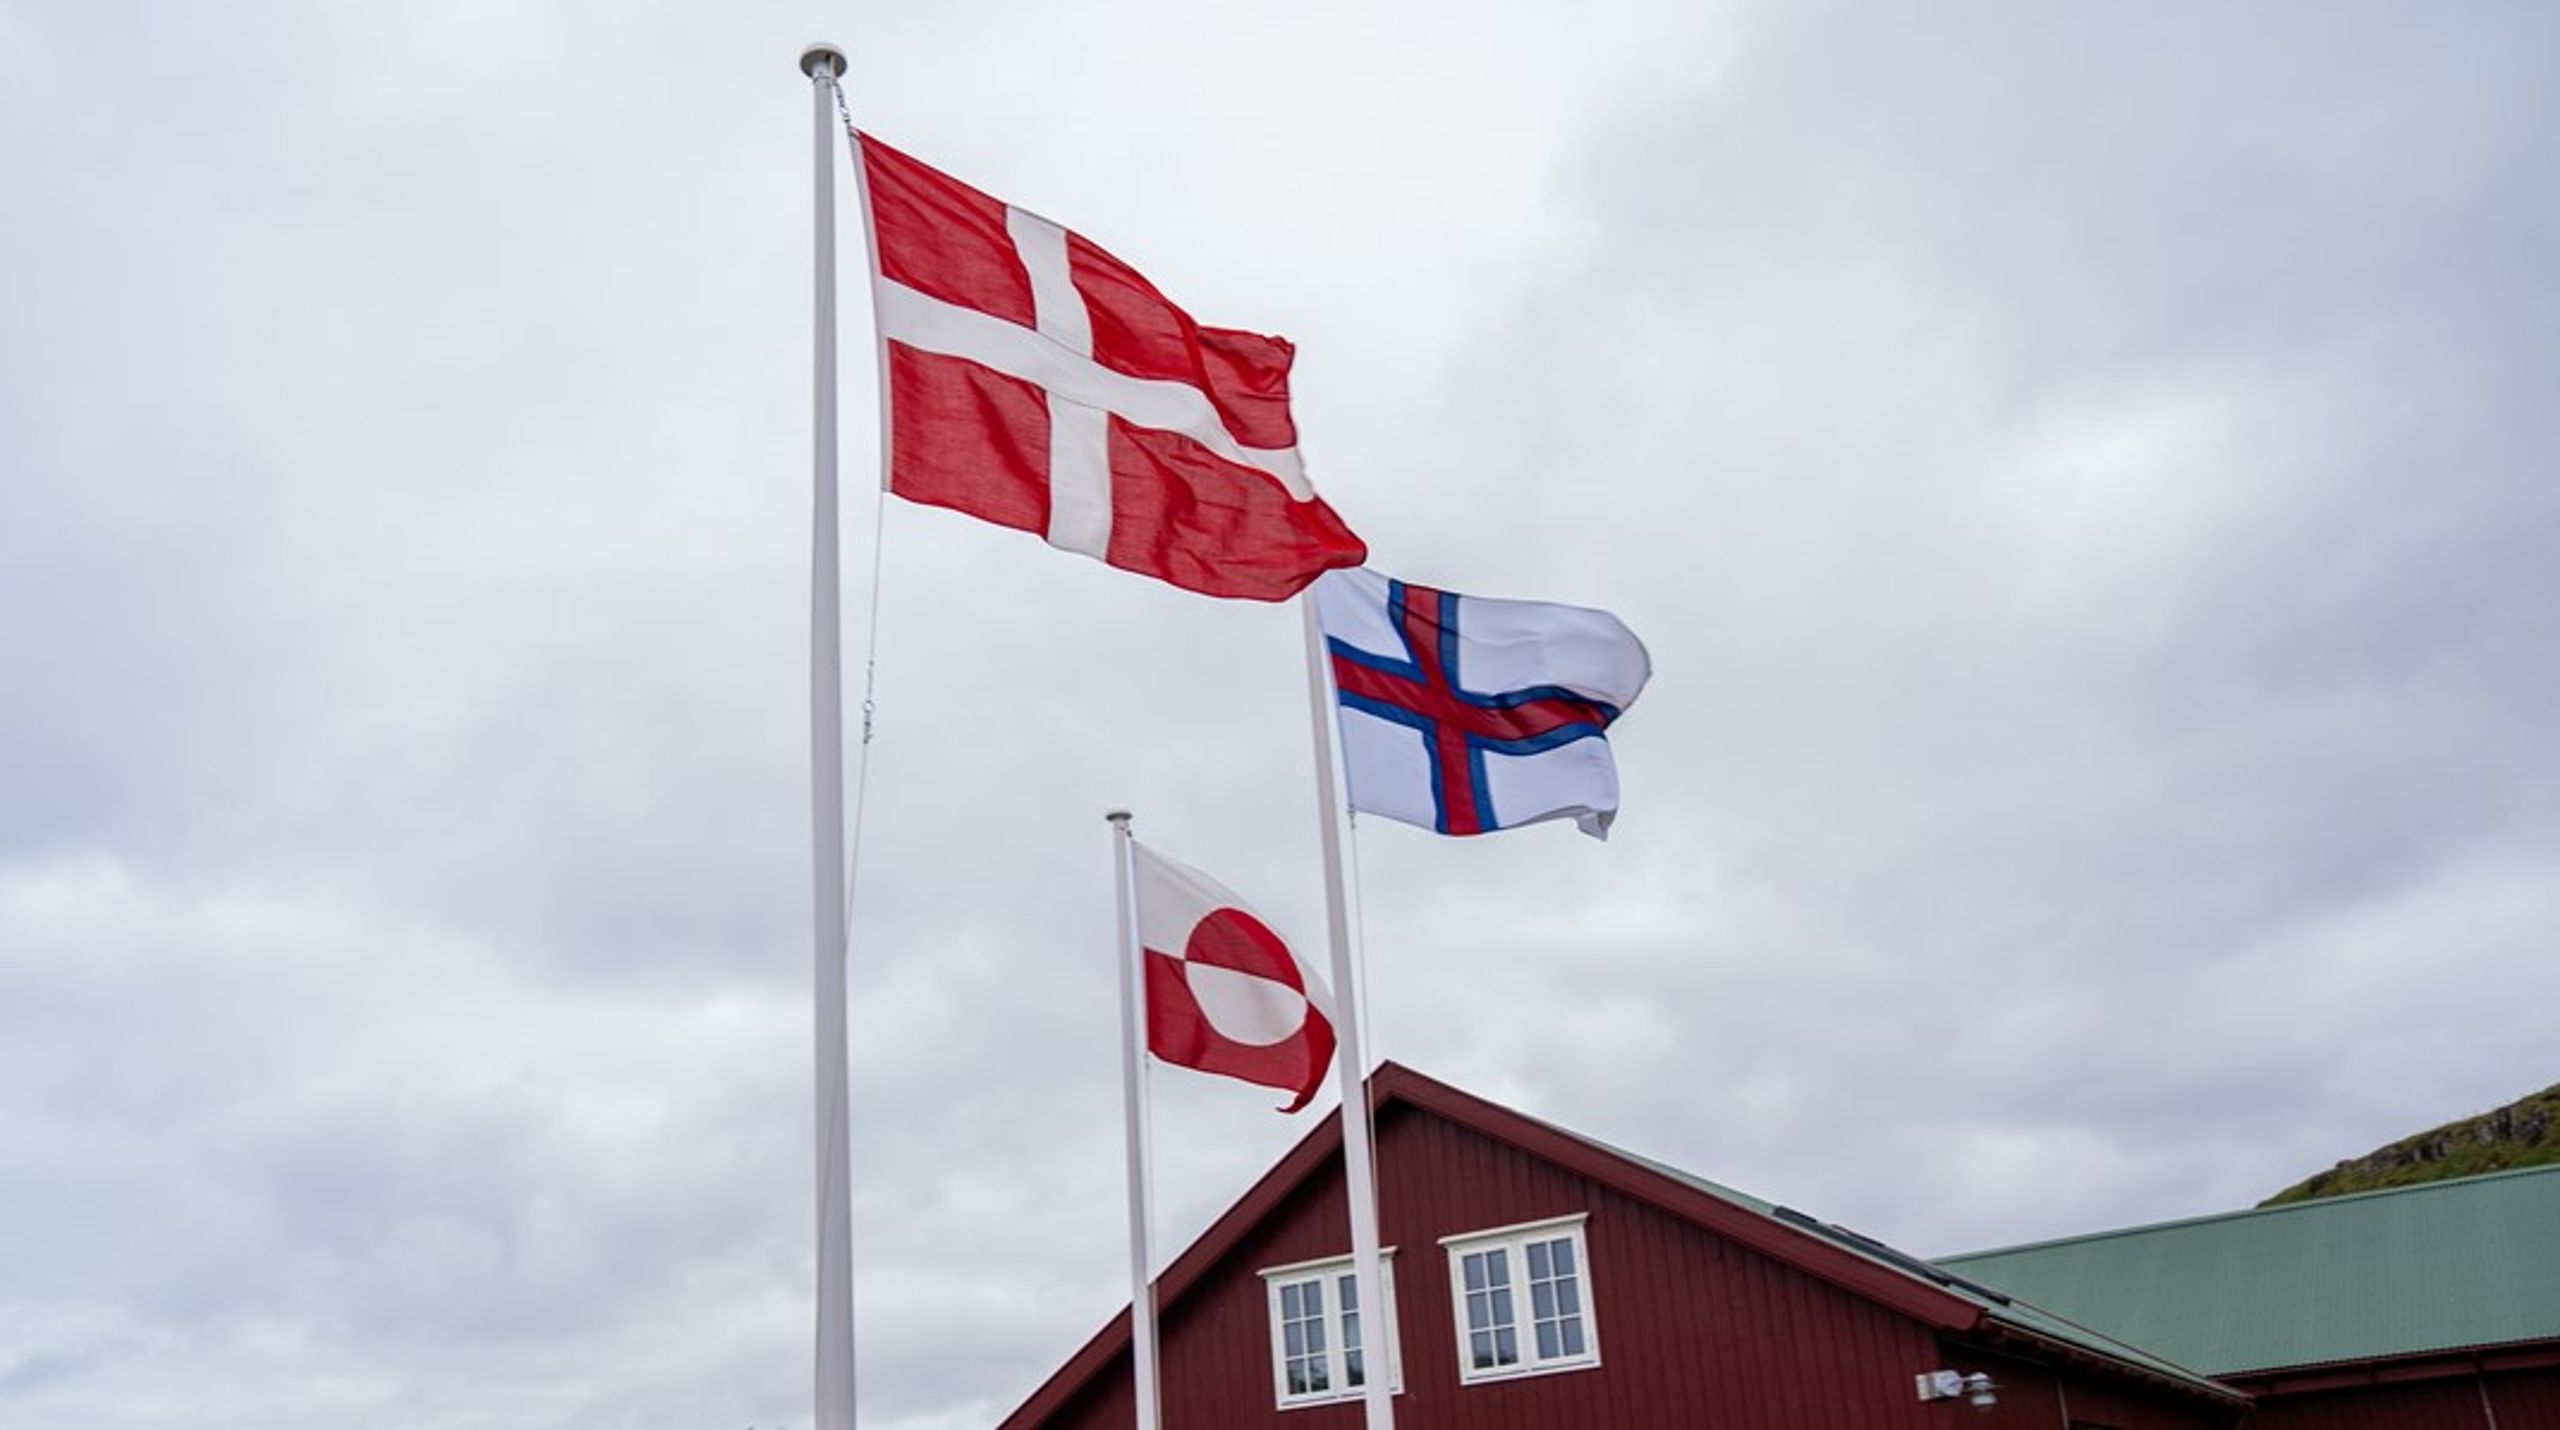 Jeg støtter Rigsfællesskabet mellem Grønland, Færøerne og Danmark, men det har absolut intet at gøre med ønske om en stærkere dansk international position, skriver Karsten Hønge.